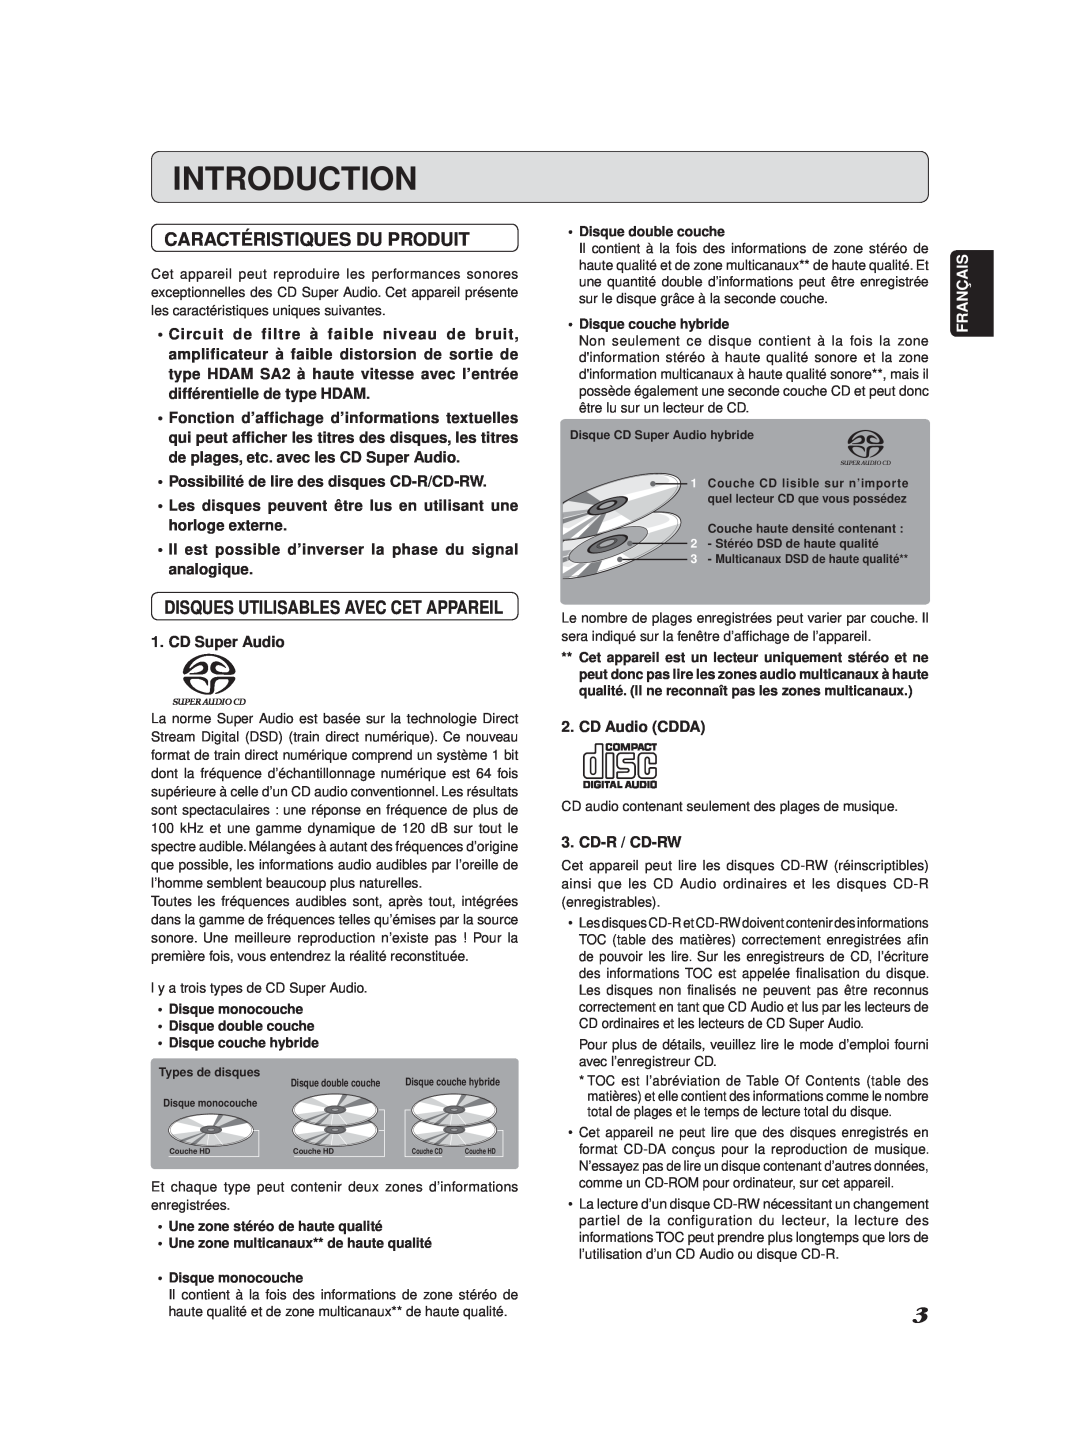 Marantz SA-11S2 manual Introduction, Caractéristiques Du Produit 